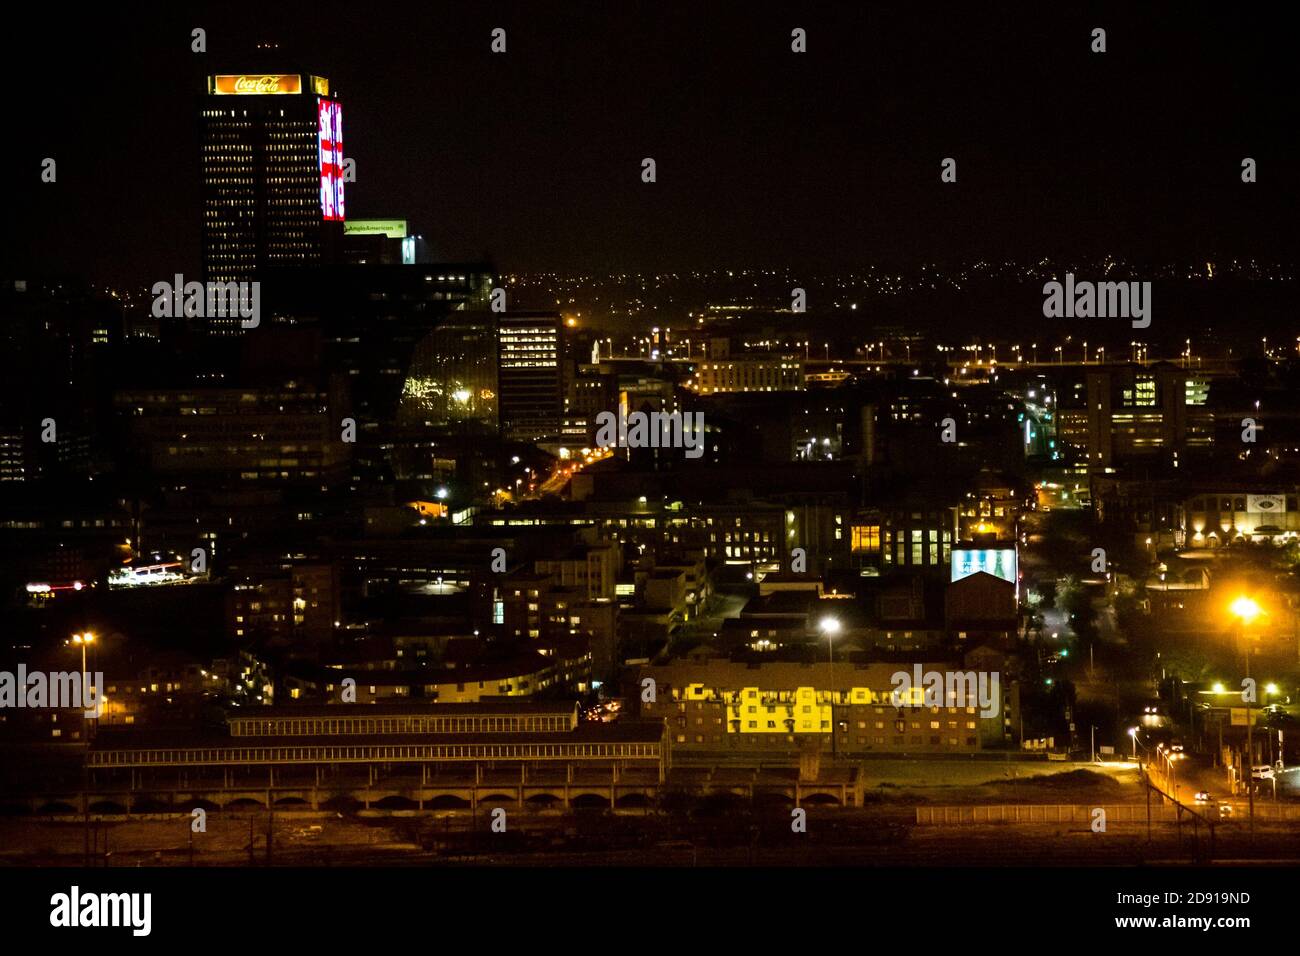 Johannesburg, Afrique du Sud - 17 septembre 2013 : vue en grand angle des bâtiments illuminés et des scènes de rue de la banlieue de Braamfontein, dans le quartier des affaires de Johannesburg Banque D'Images